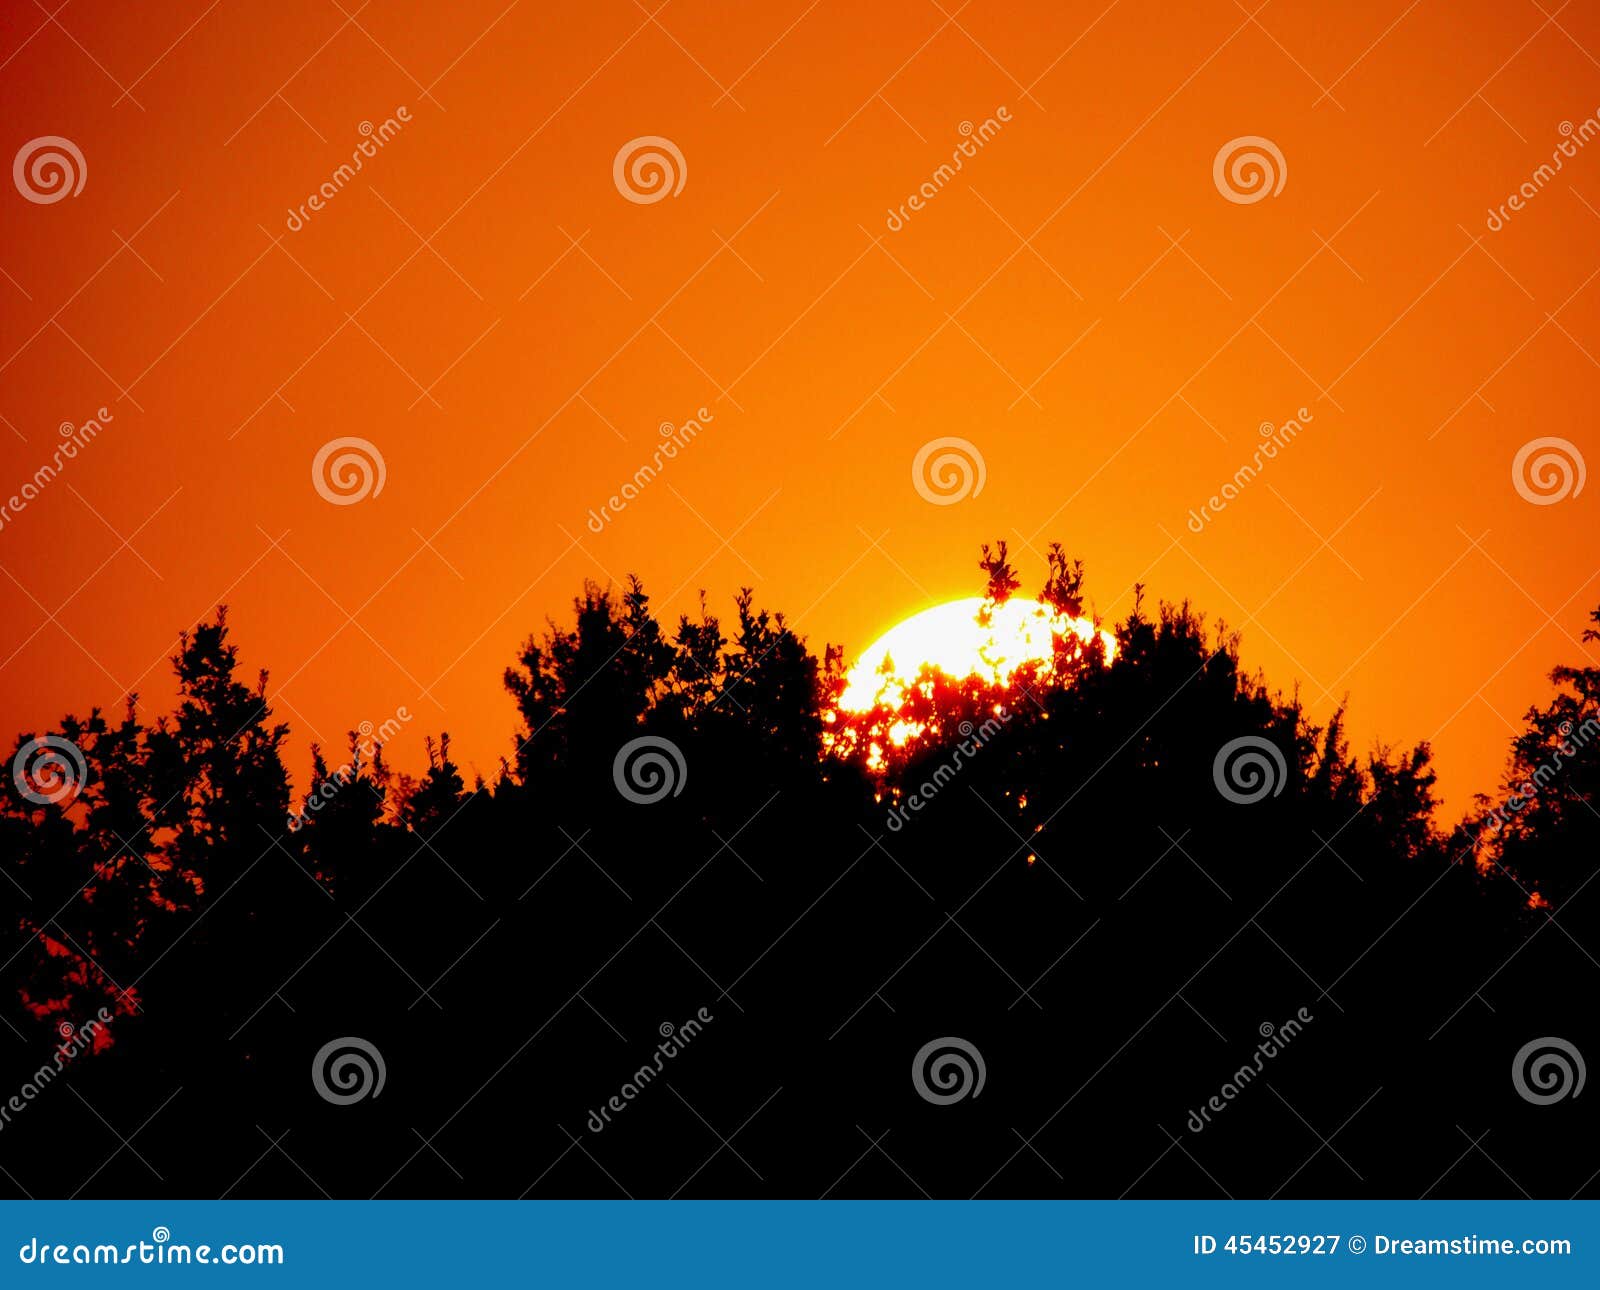 sunrise with orange sky